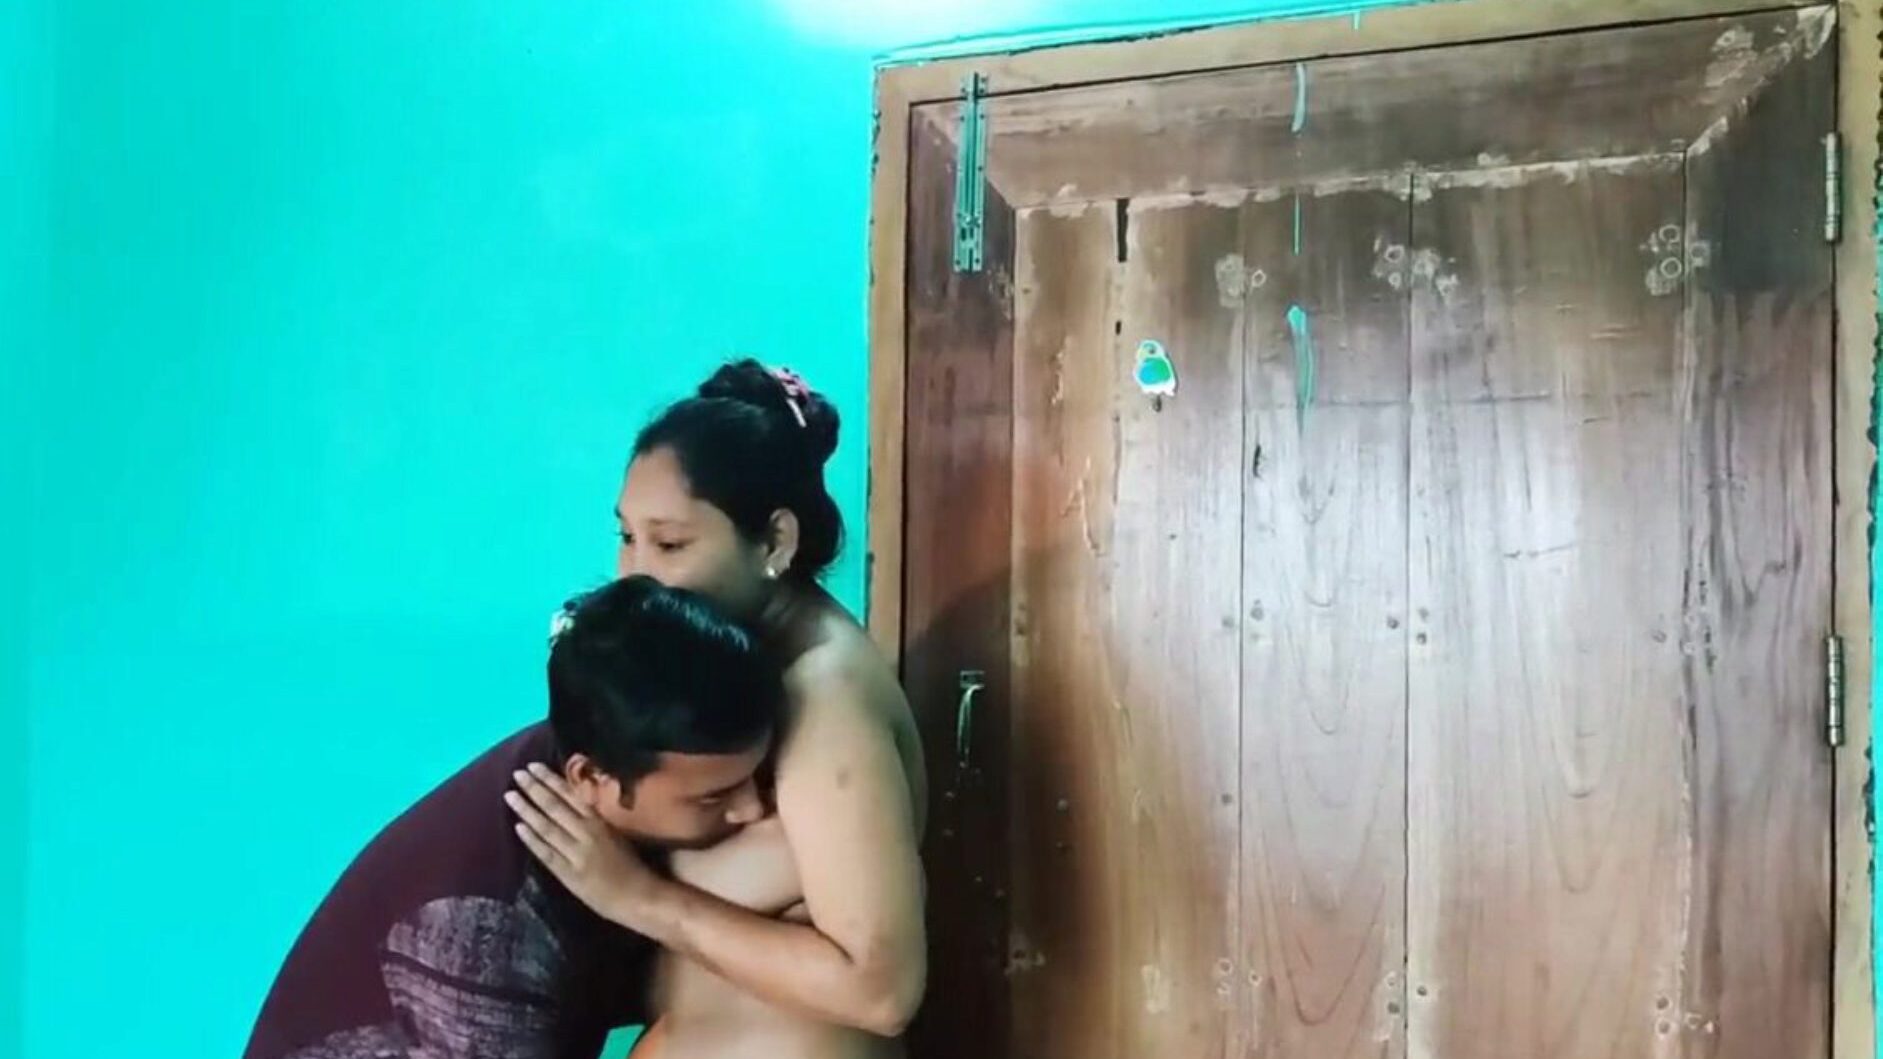 Desi bengalski seks wideo nago, darmowe azjatyckie porno 6c: xHamster oglądaj nagi odcinek Desi bengalski seks wideo na xHamster, najgrubszy kanał sieciowy HD z mnóstwem darmowych azjatyckich filmów porno z seksem XXN